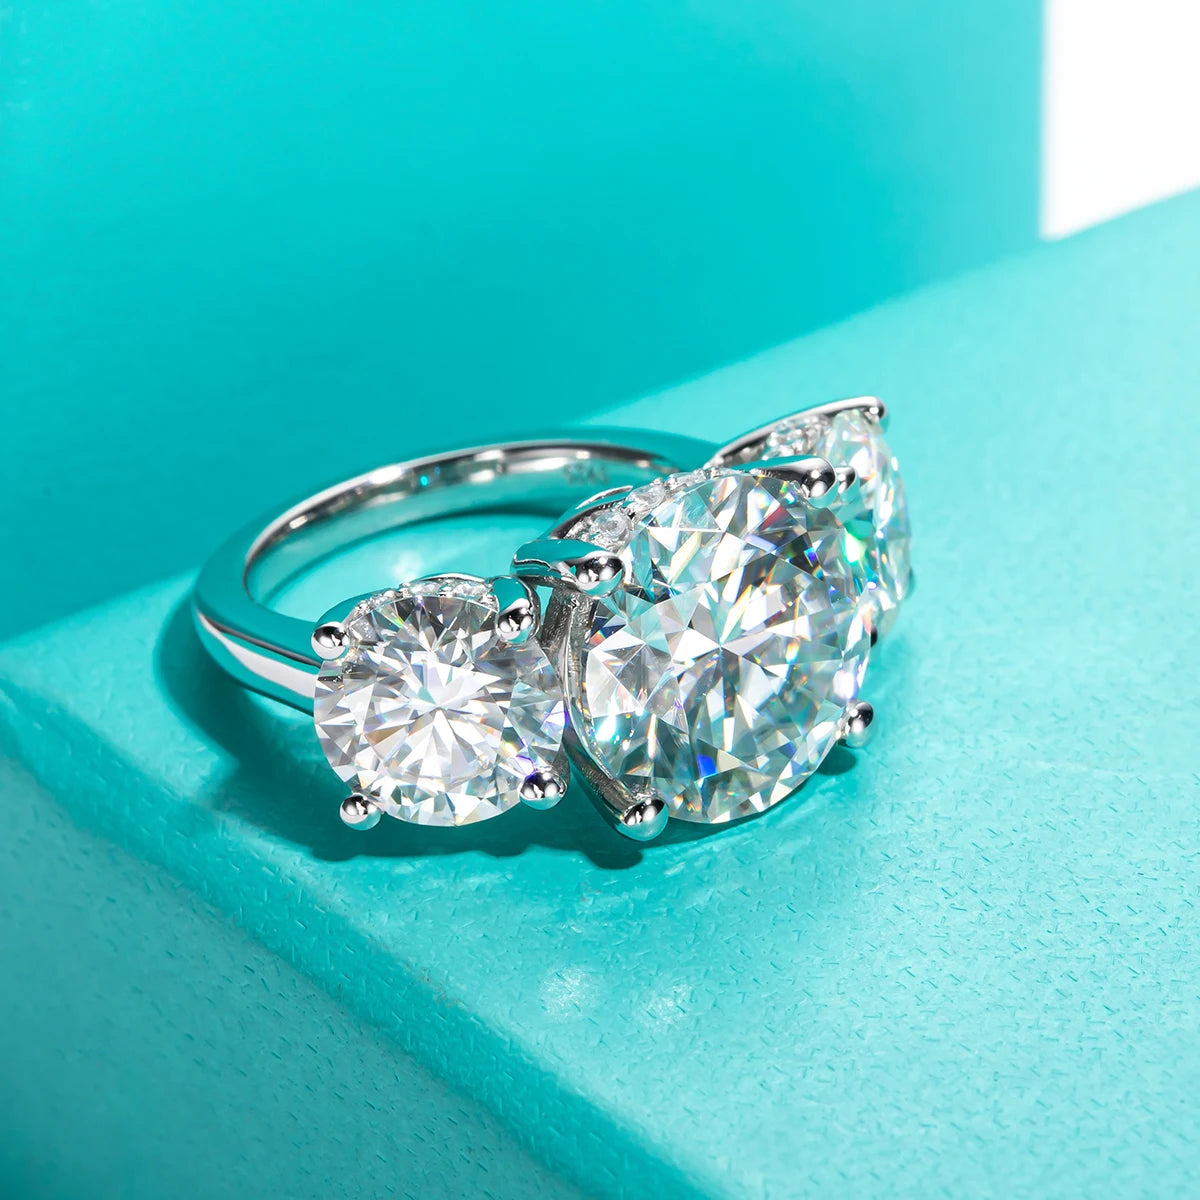 Moissanite engagement rings, diamond alternative.